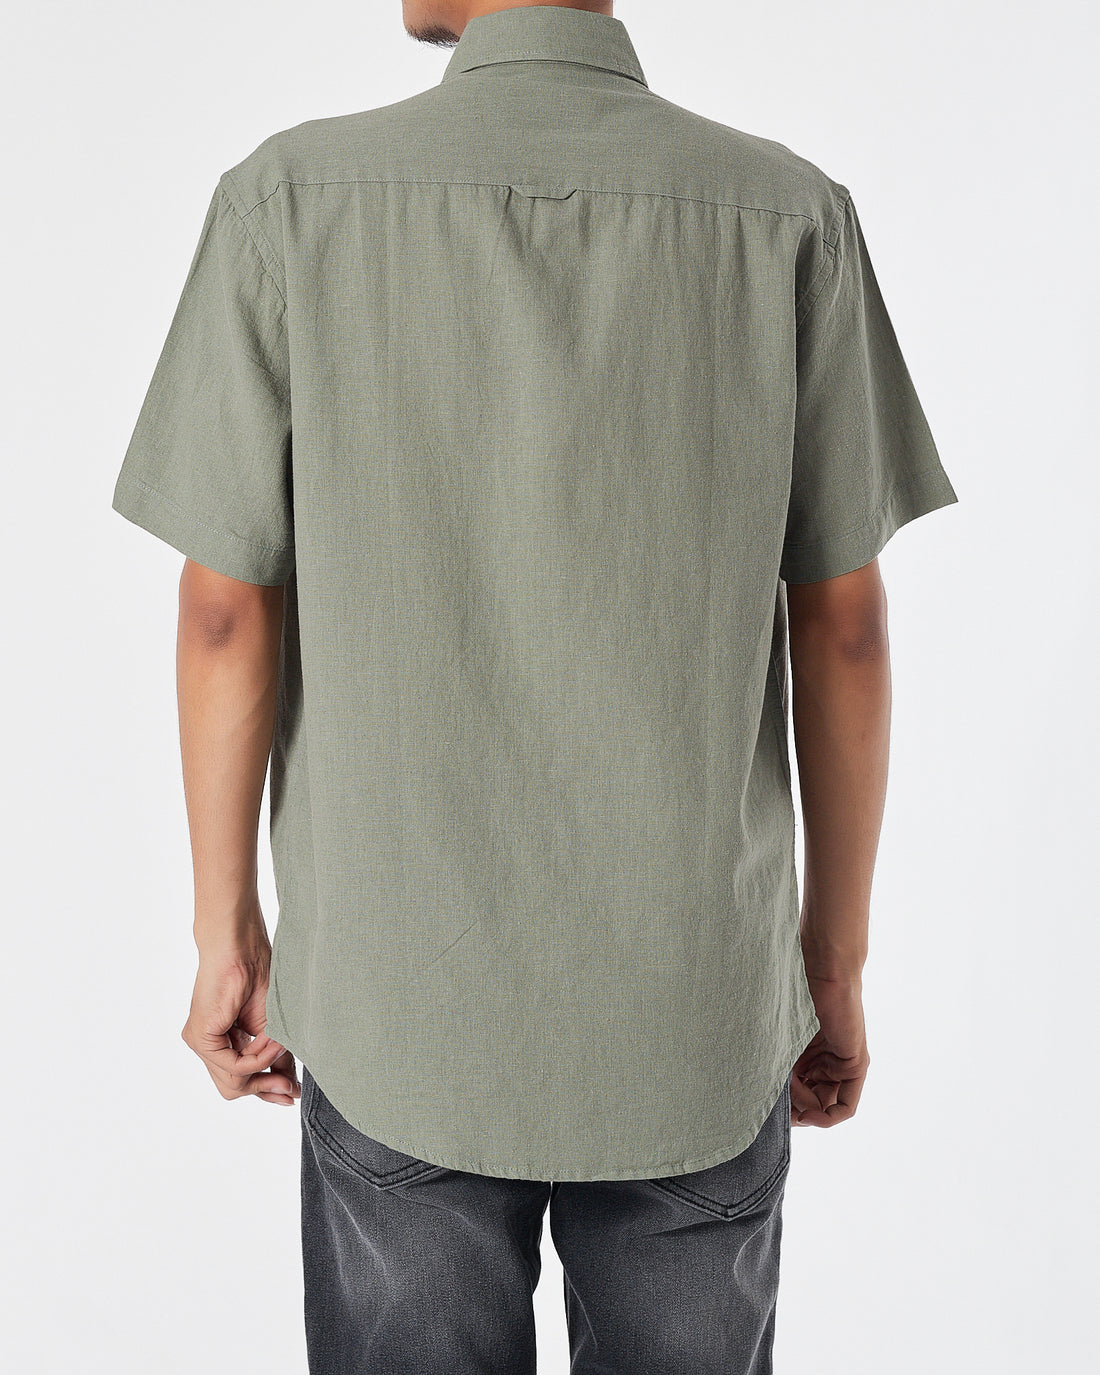 RL Casual Linen Men Green Shirts Short Sleeve 20.90